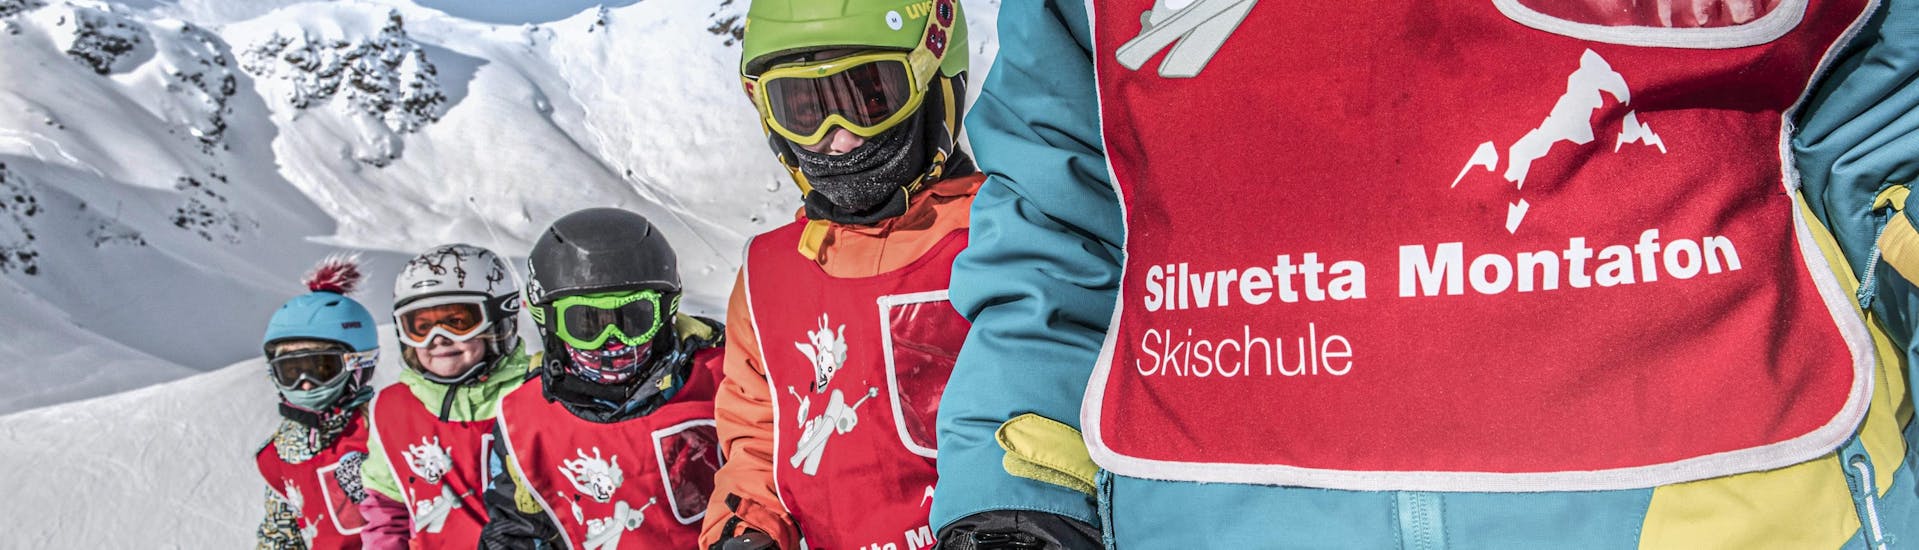 Un groupe d'enfants s'amuse sur les pistes de Silvretta Montafon pendant les cours de ski pour enfants (dès 6 ans) pour les débutants avec Skischule Schruns.